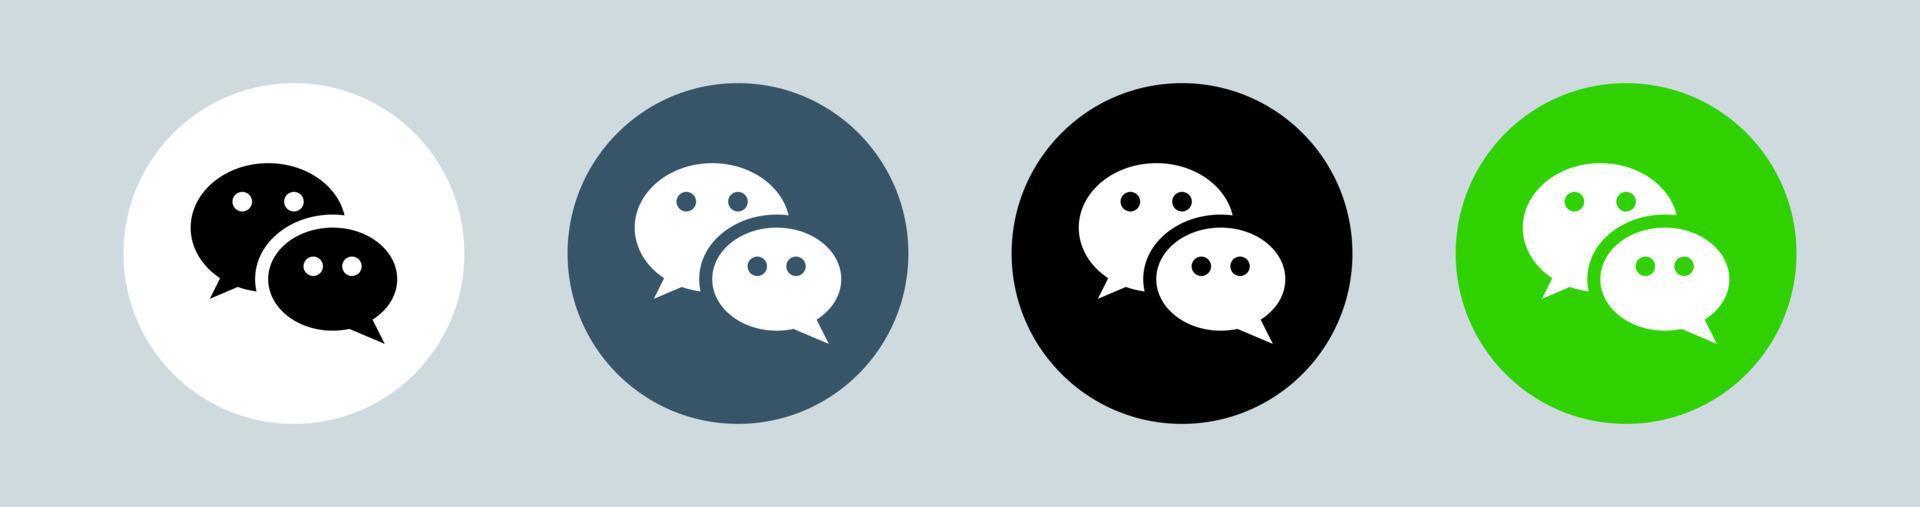 logo wechat in cerchio. illustrazione vettoriale del logotipo delle app di messaggistica.